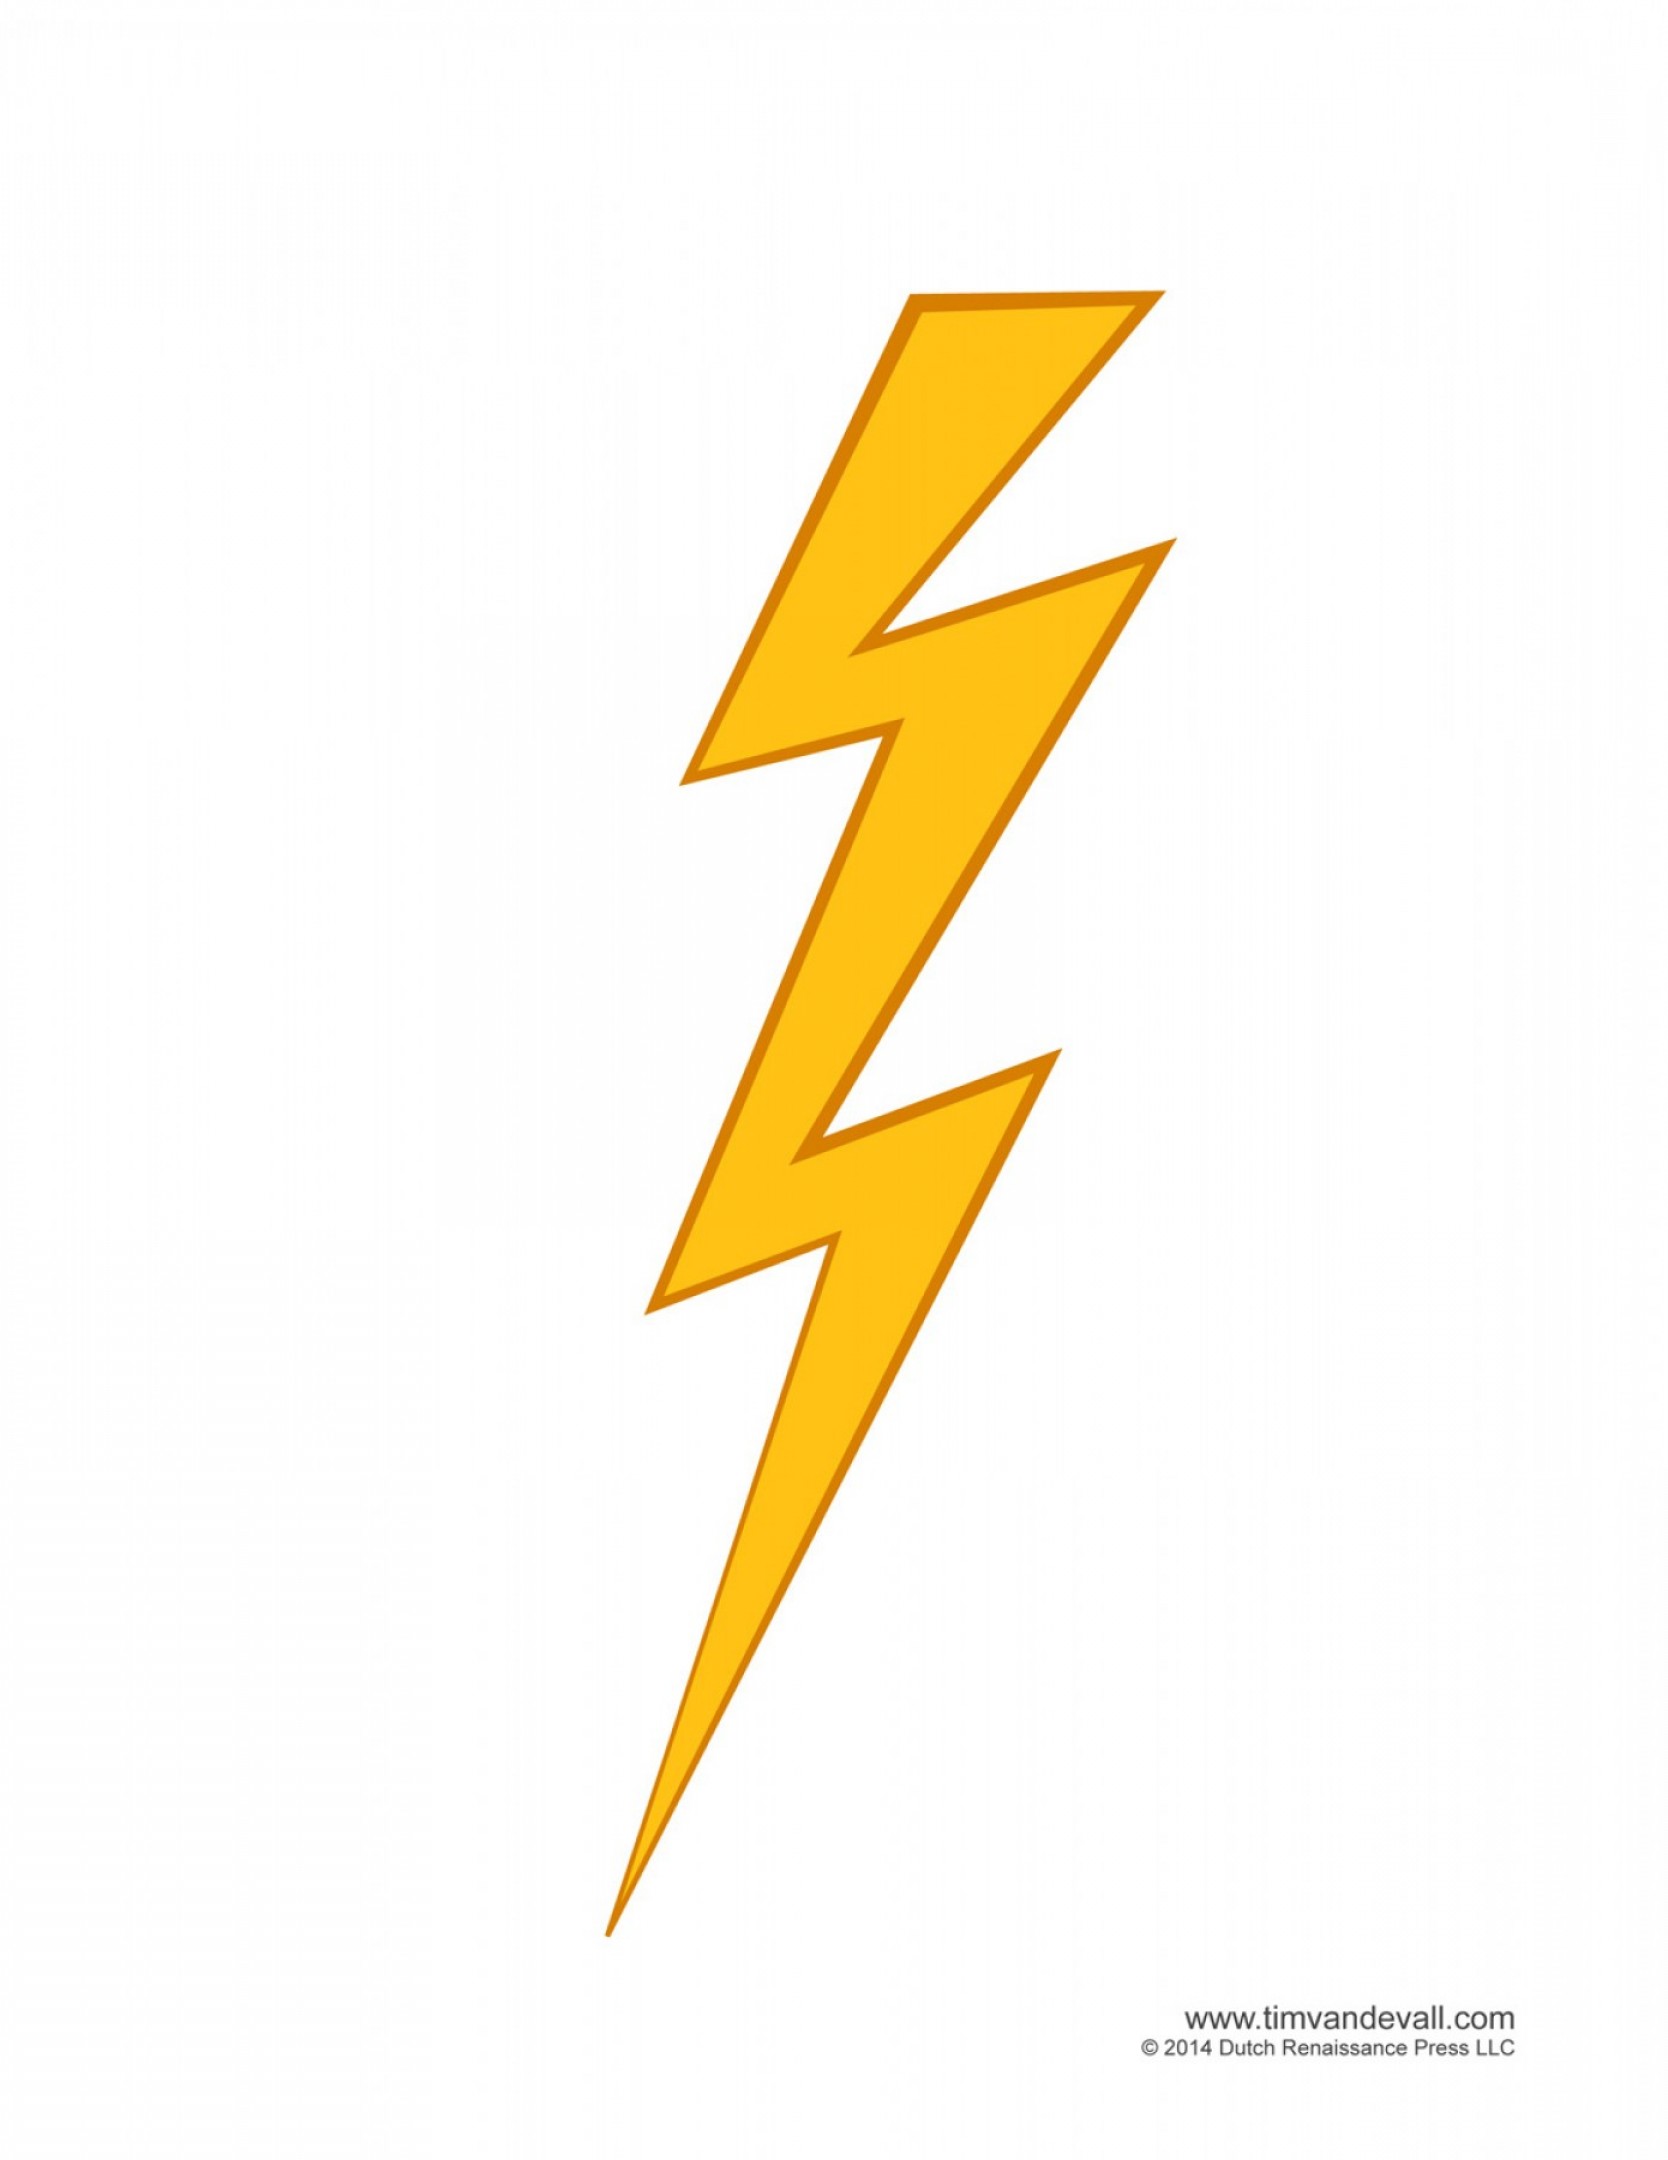 Lightning bolt drawing.